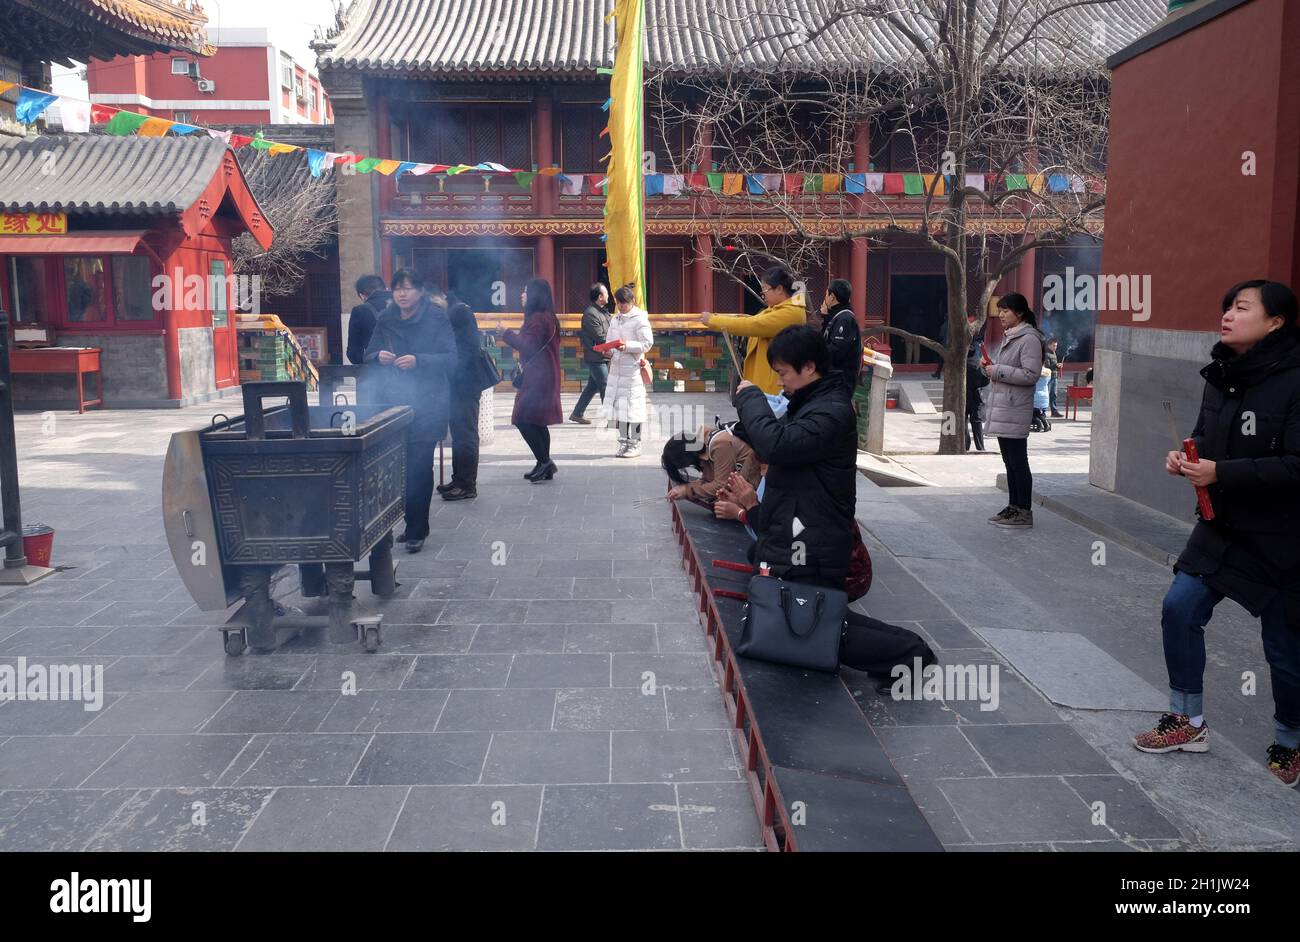 Les adorateurs qui tiennent des bâtonnets d'encens prient au Temple Yonghegong Lama à Beijing, en Chine Banque D'Images